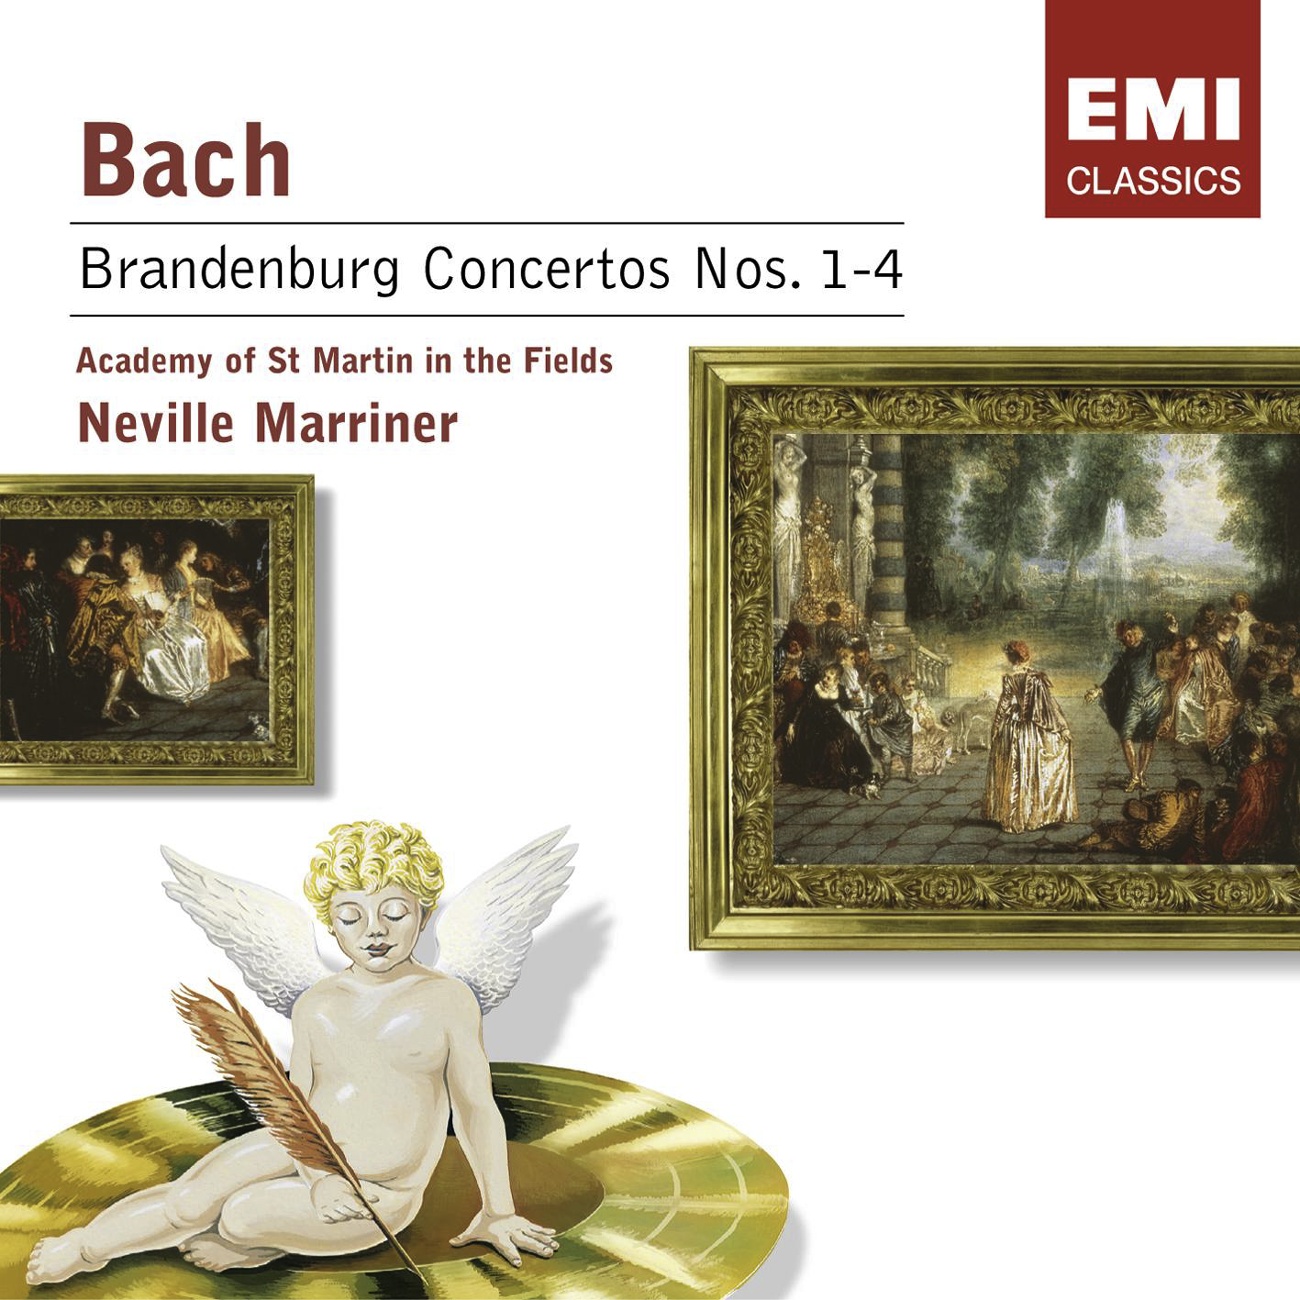 Brandenburg Concerto No. 3 in G, BWV 1048: I. [Allegro]